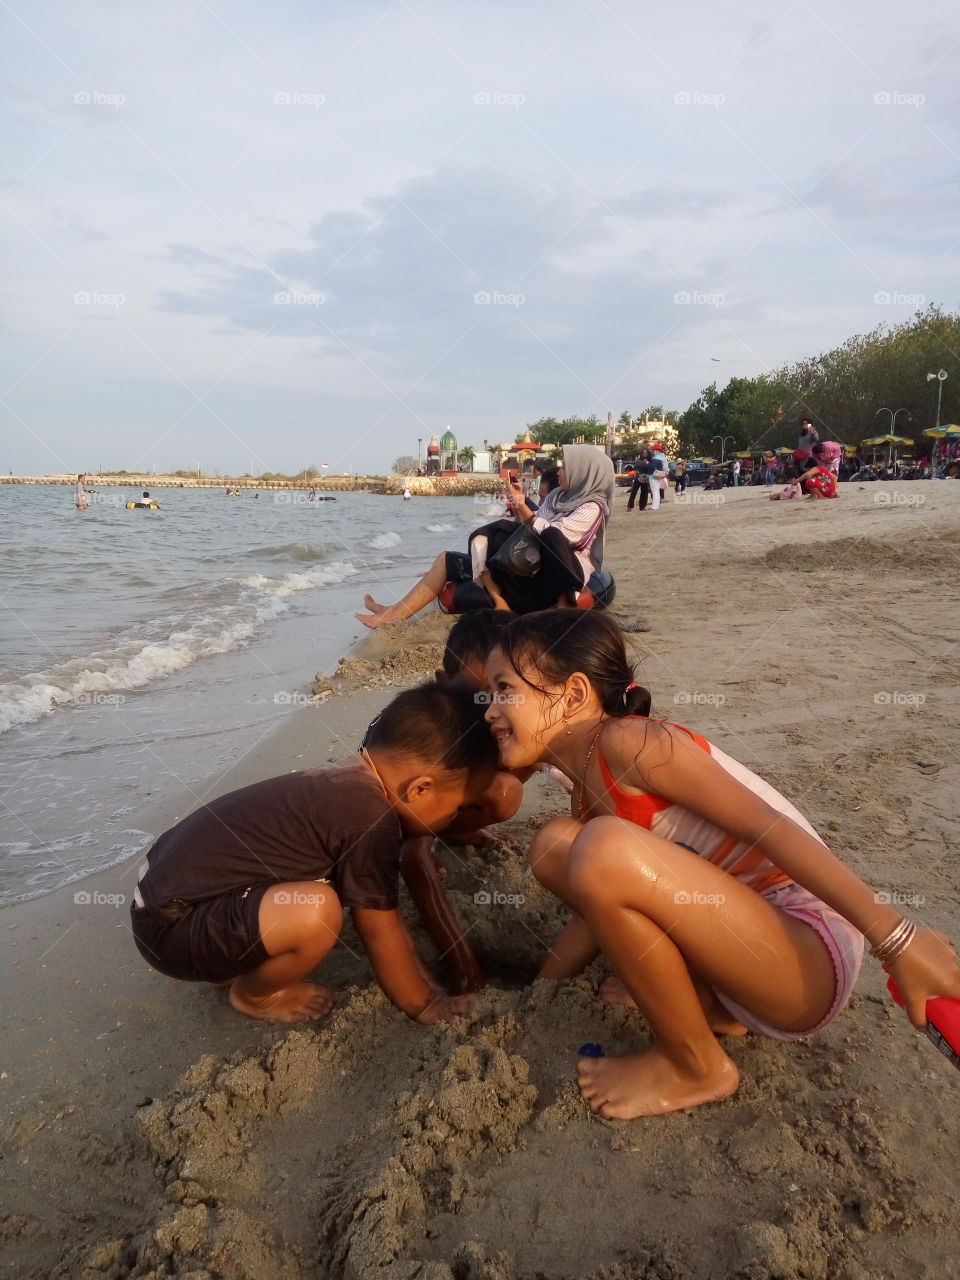 Don't Stop Smile
Dalegan Beach, Gresik, East Java, Indonesia